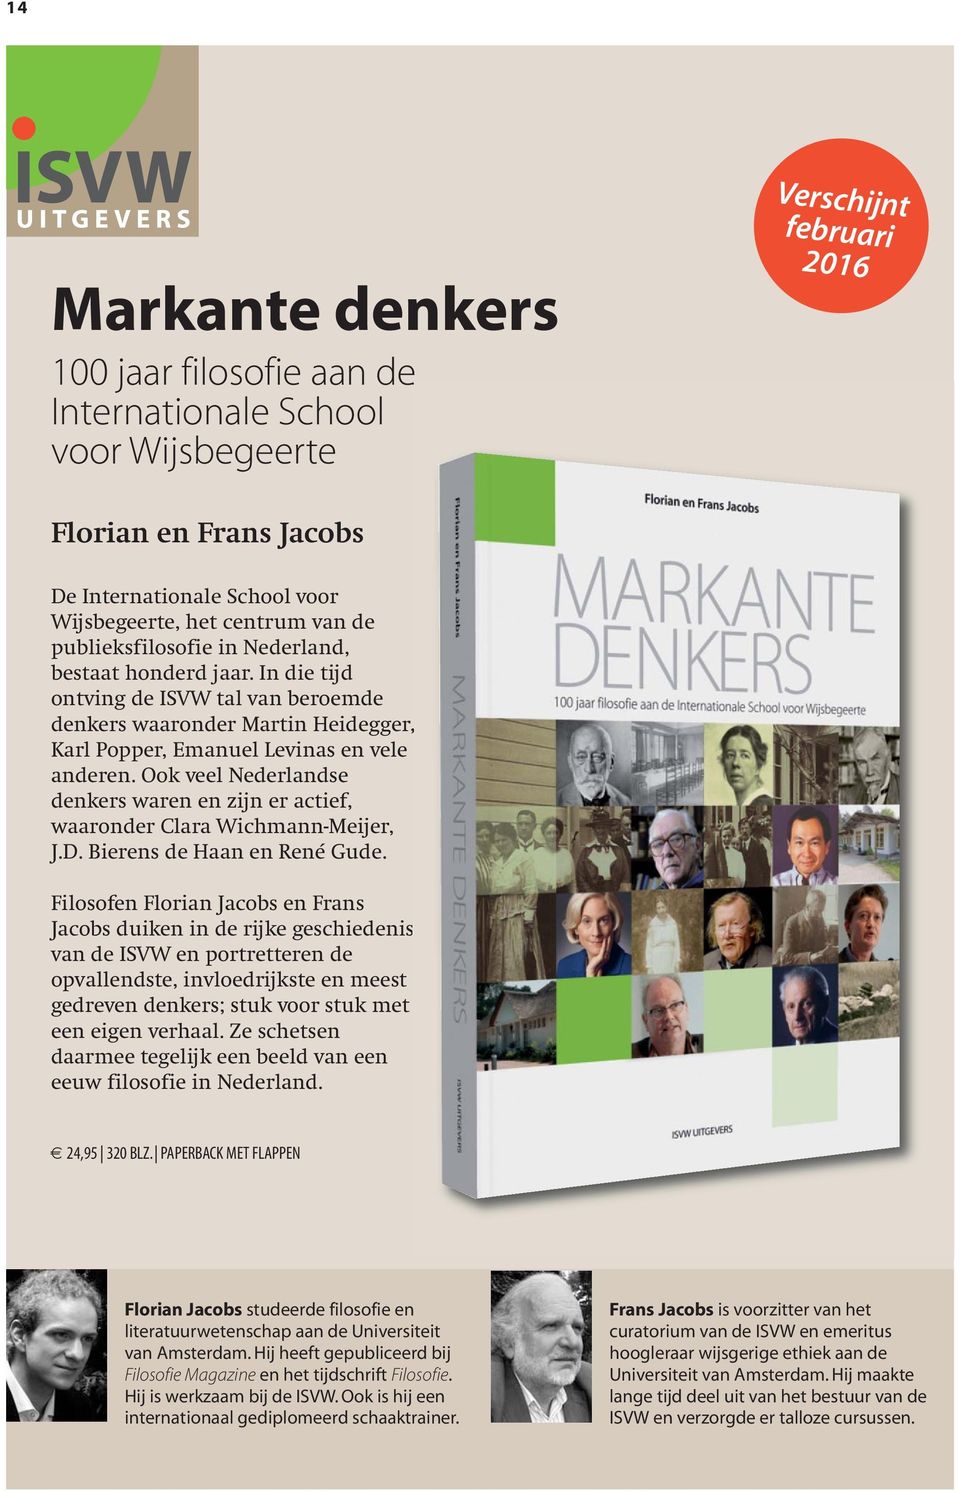 Ook veel Nederlandse denkers waren en zijn er actief, waaronder Clara Wichmann-Meijer, J.D. Bierens de Haan en René Gude.